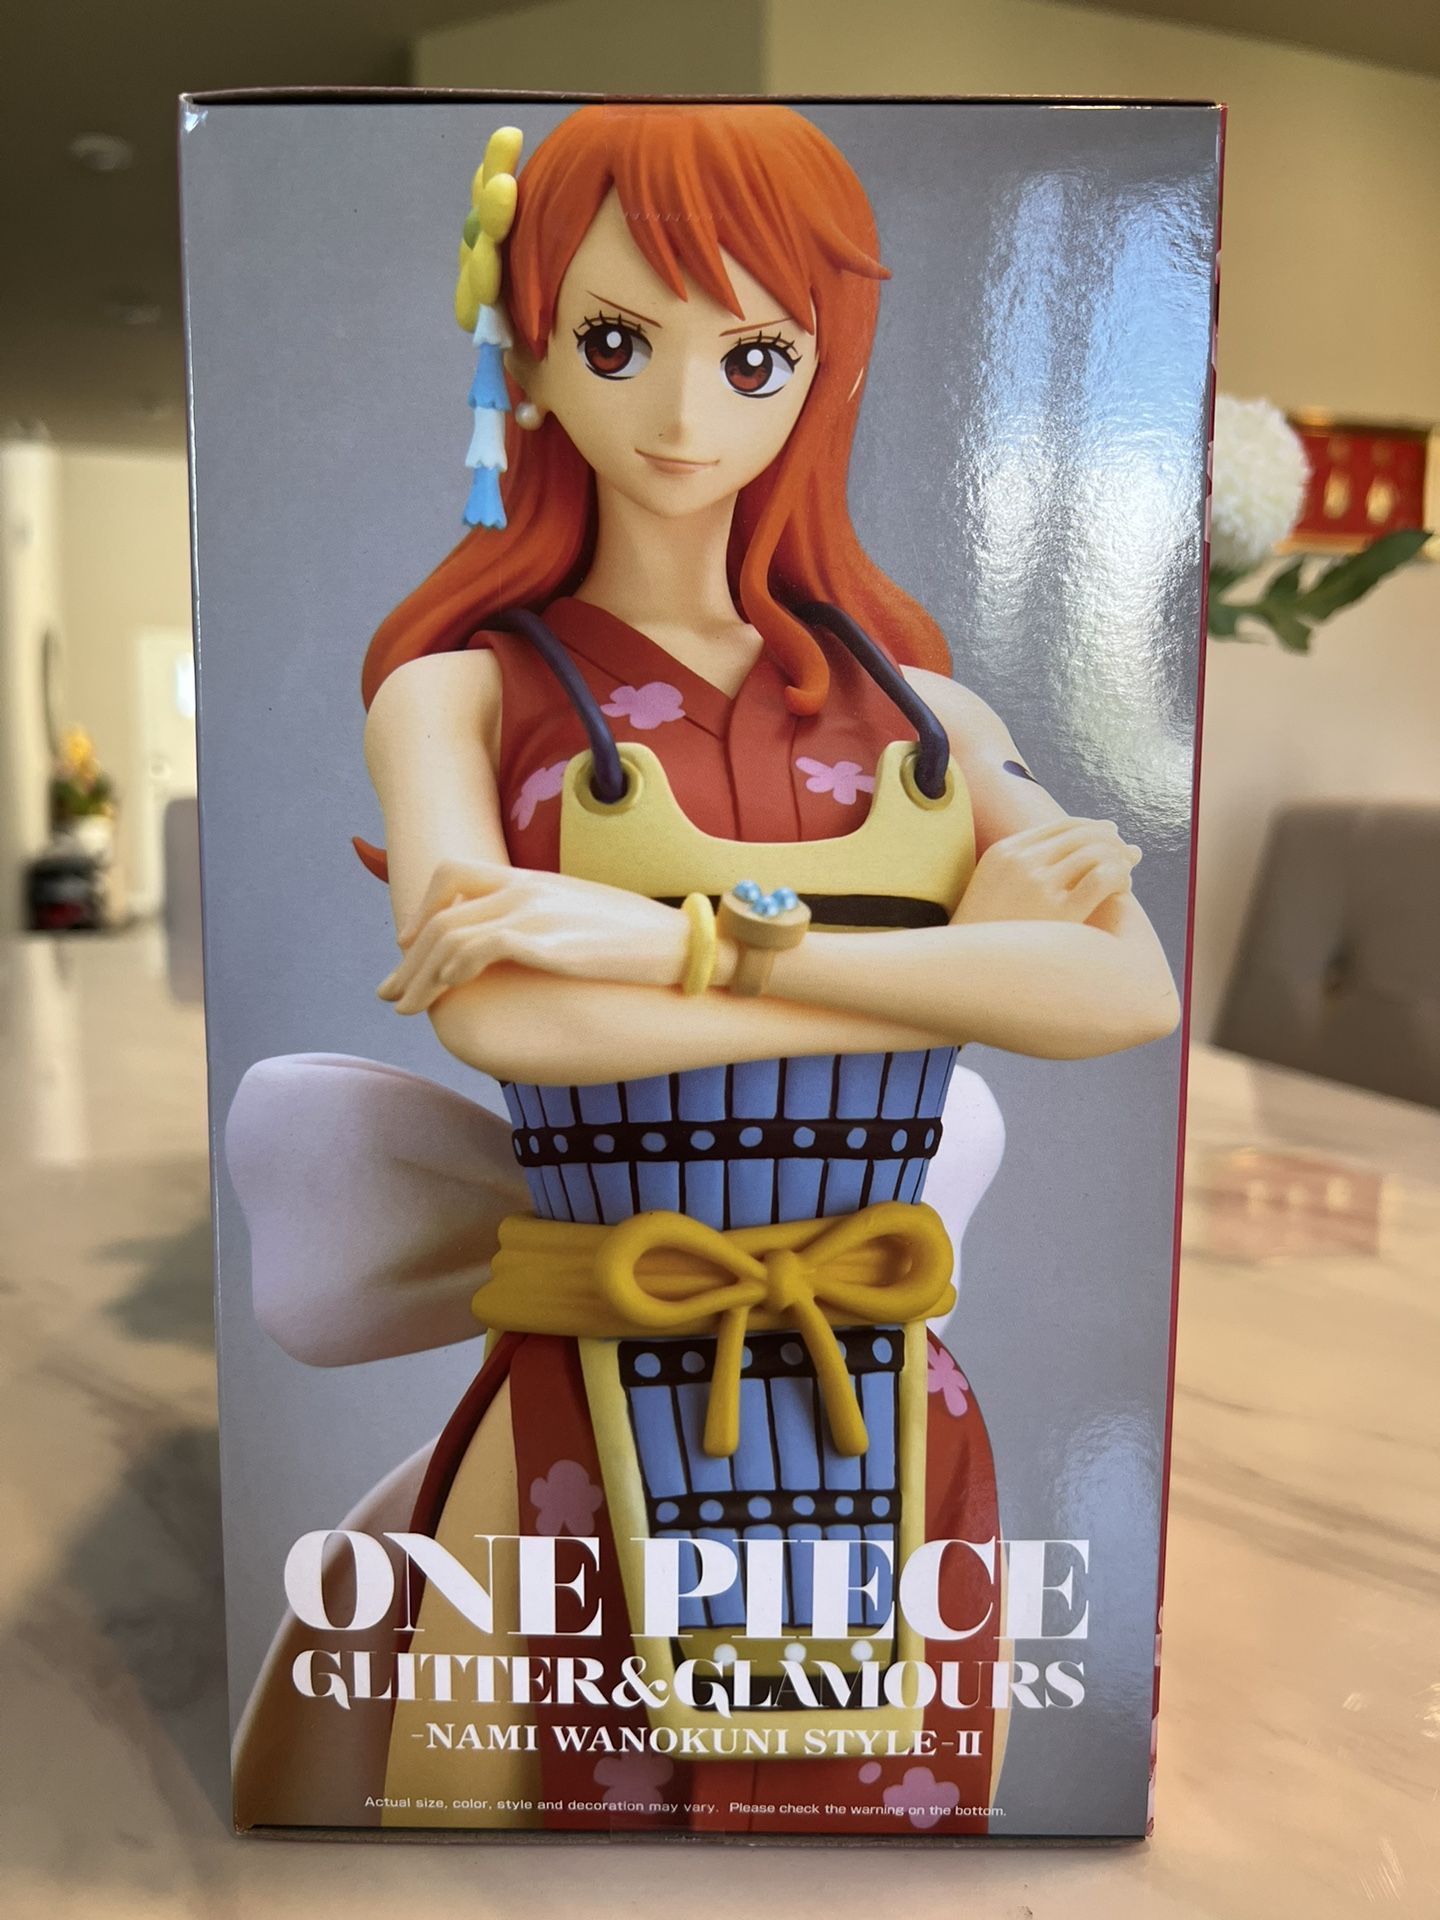 One Piece Nami Figurine